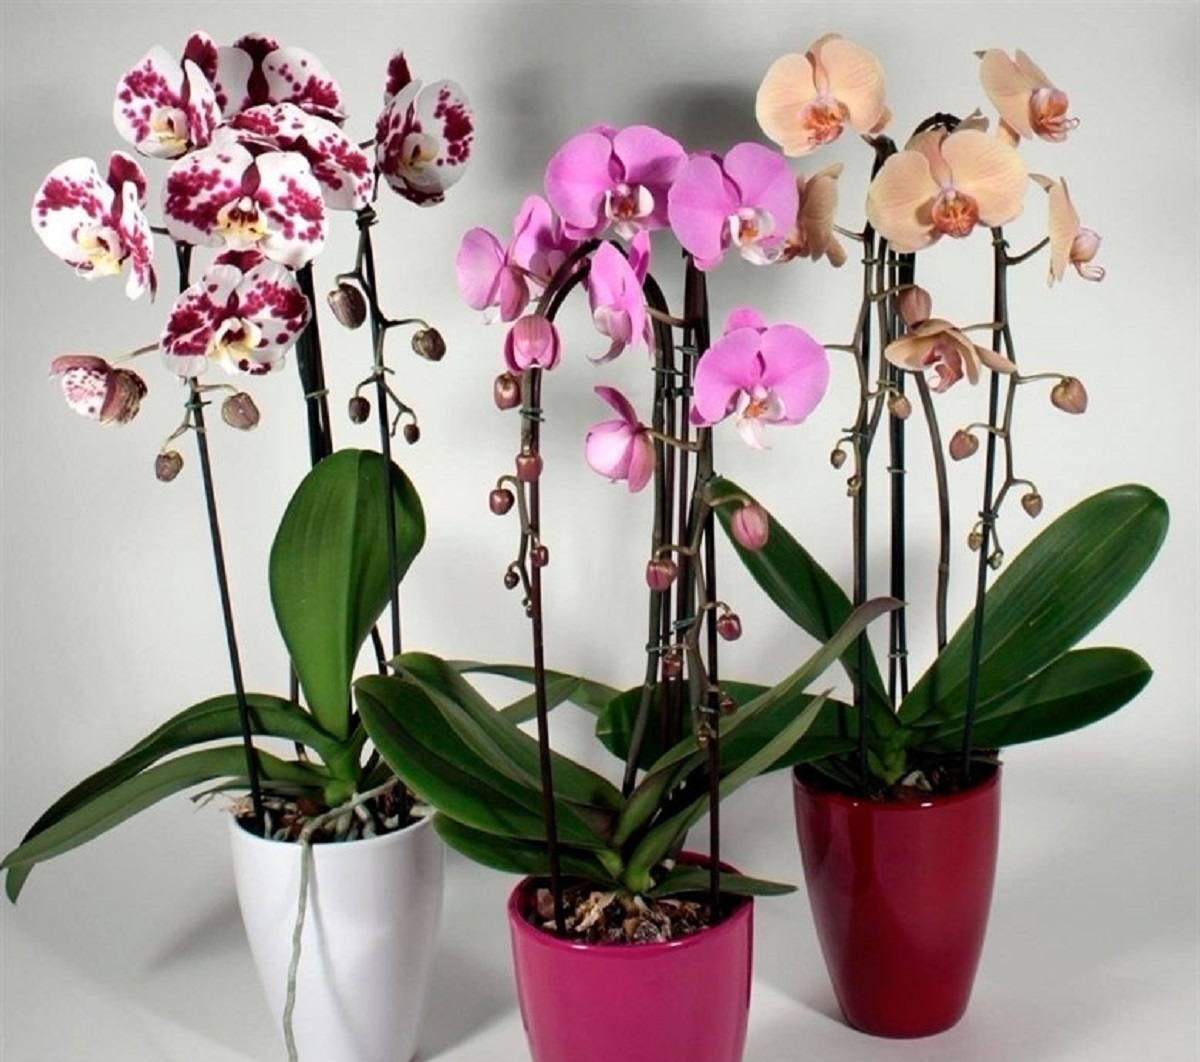 Купить орхидею в чебоксарах. Орхидея ambiance Phalaenopsis. Орхидея Изабель фаленопсис. Arezzo фаленопсис. Орхидея Мальва фаленопсис.